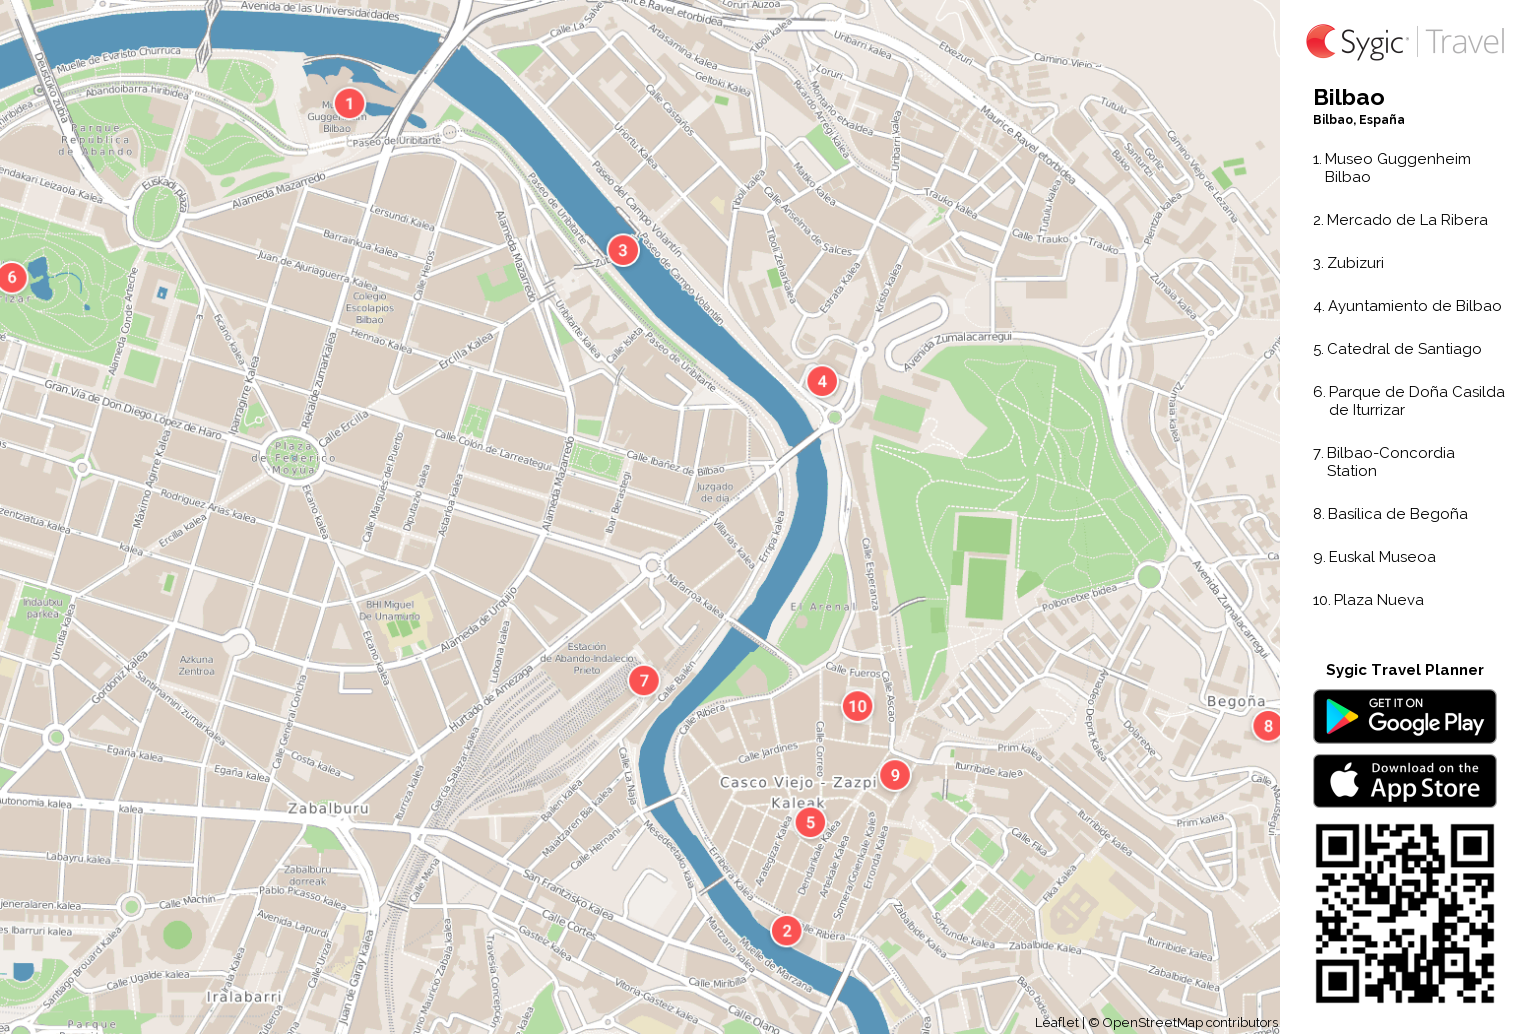 mapa turistico bilbao Bilbao Mapa Turistico Para Imprimir Sygic Travel mapa turistico bilbao